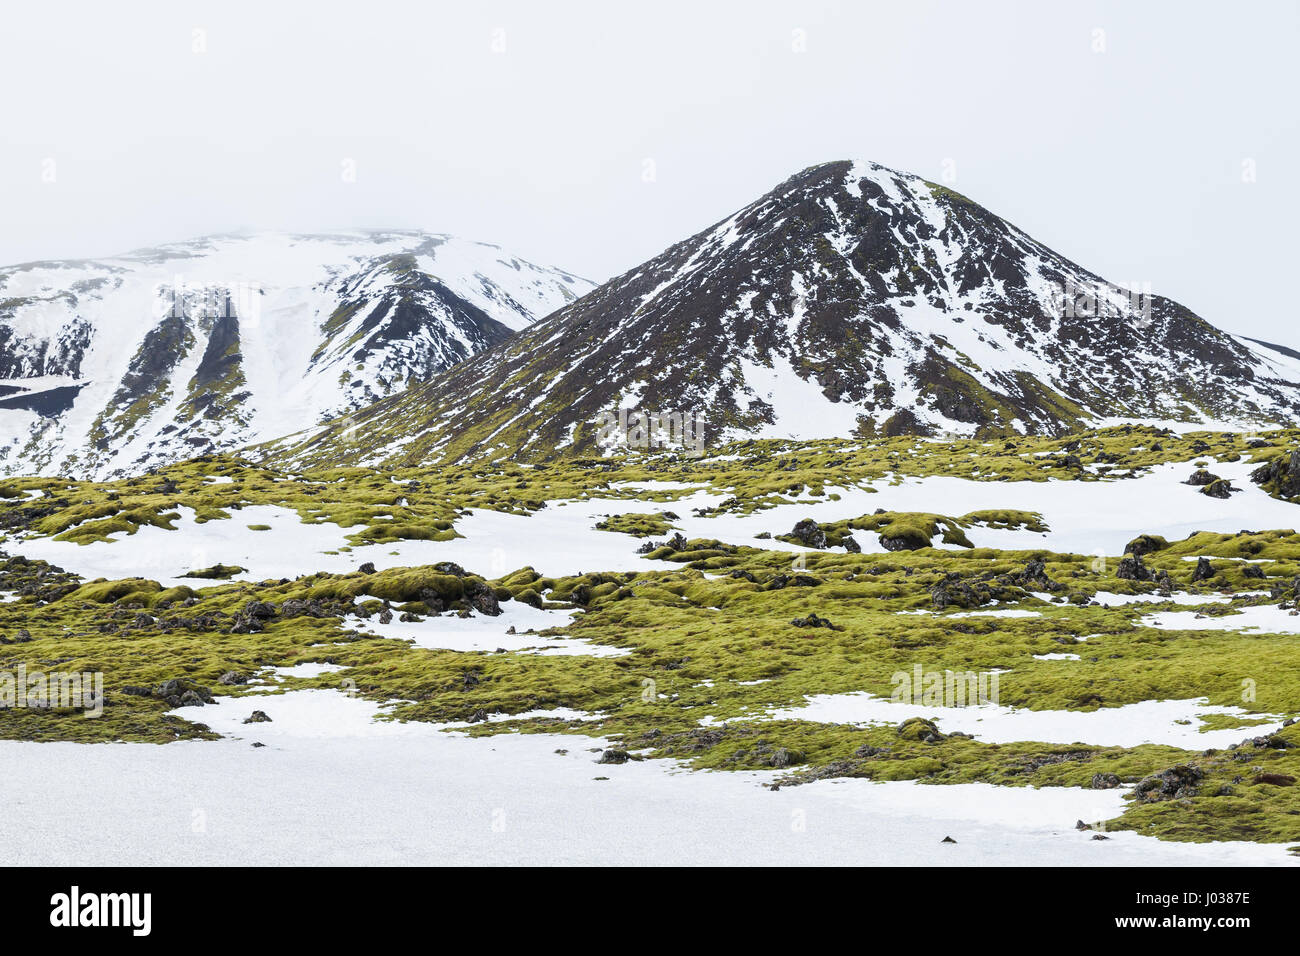 Paysage islandais Misty avec neige, vert mousse poussant sur les rochers et les montagnes Rocheuses, la côte sud de l'Islande Banque D'Images